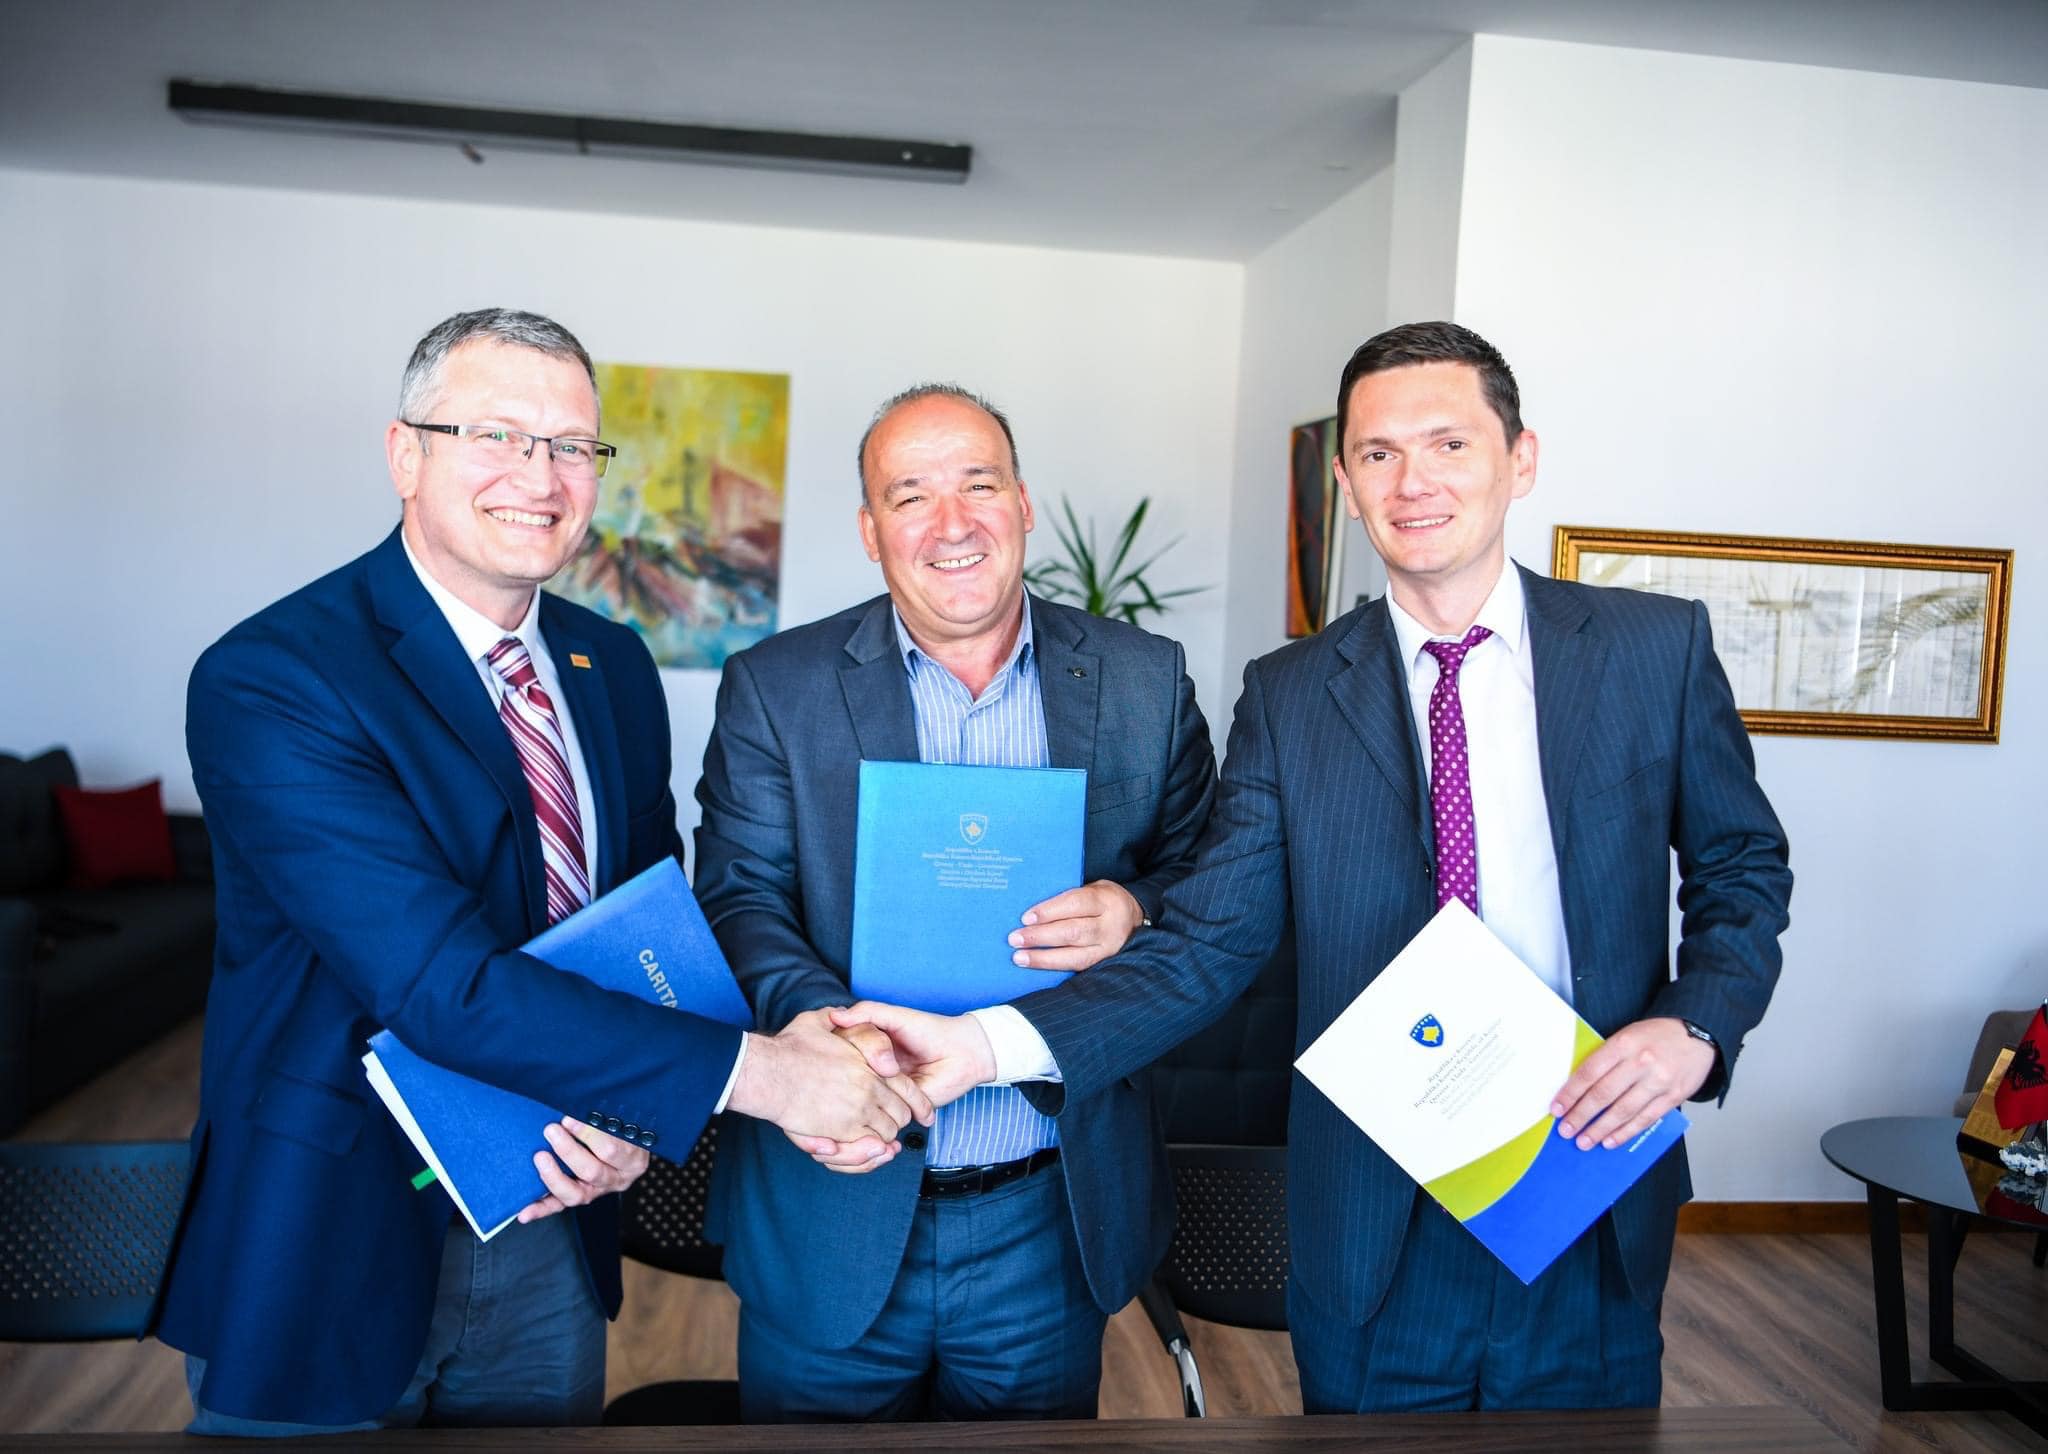 Zëvendësministri i Ministrisë së Zhvillimit Rajonal z.Agon Dobruna mori pjesë në ceremoninë e nënshkrimit të marrëveshjes së bashkëpunimit në mes CARITAS-it Zviceran dhe Komunës së Podujevës për projektin “Ndikimi i rinisë në mjedis-YENI”.